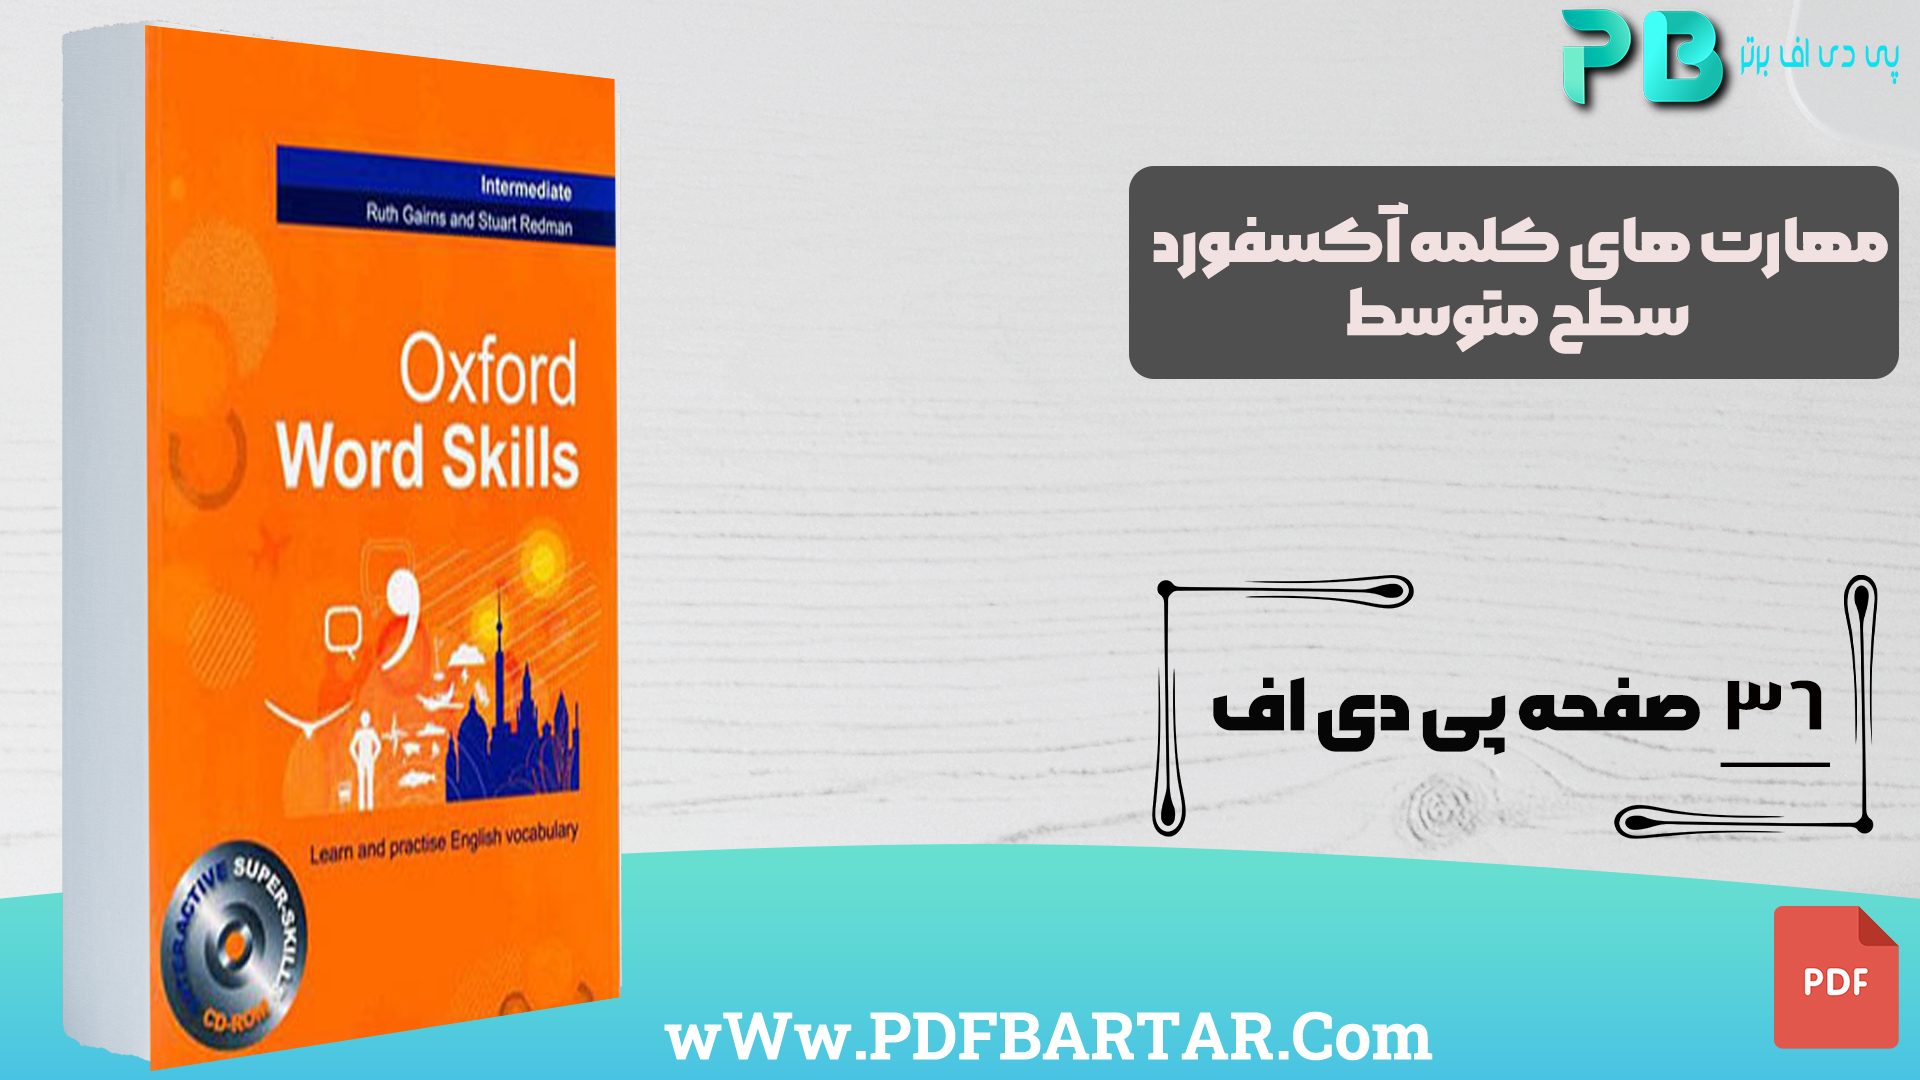 دانلود پی دی اف کتاب مهارت های کلمه آکسفورد سطح متوسط PDF